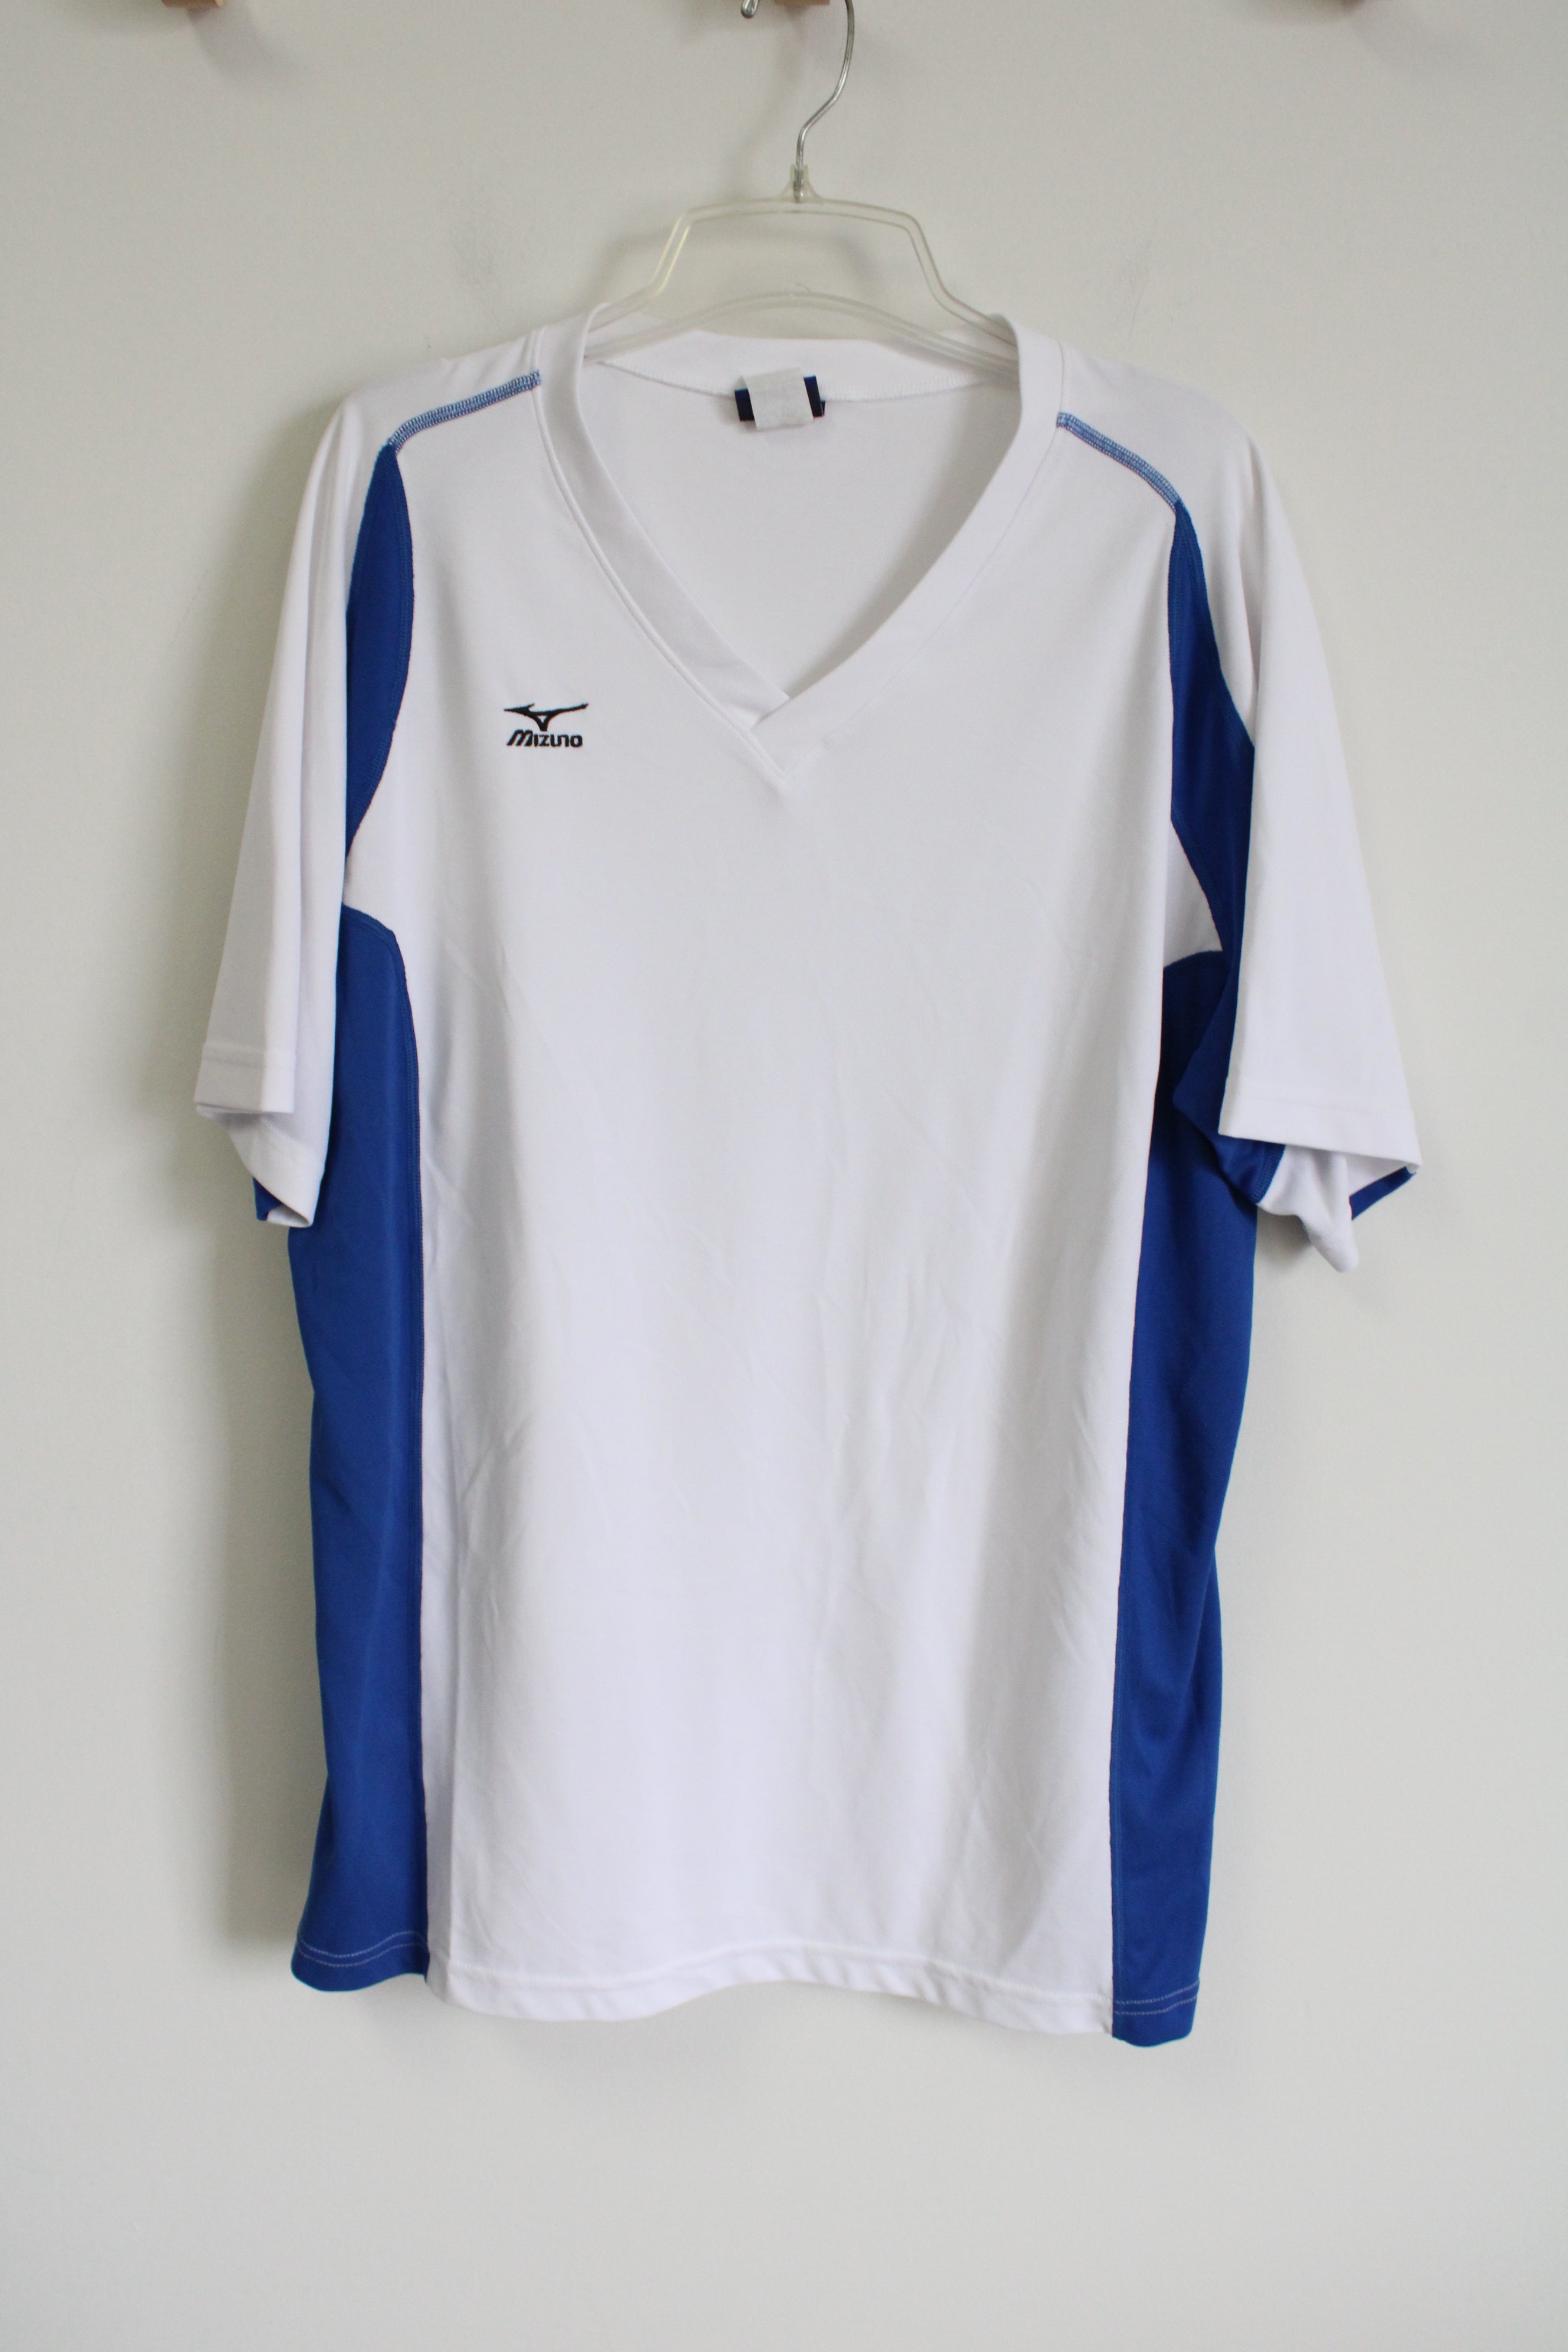 Mizuno White Blue Shirt | XL